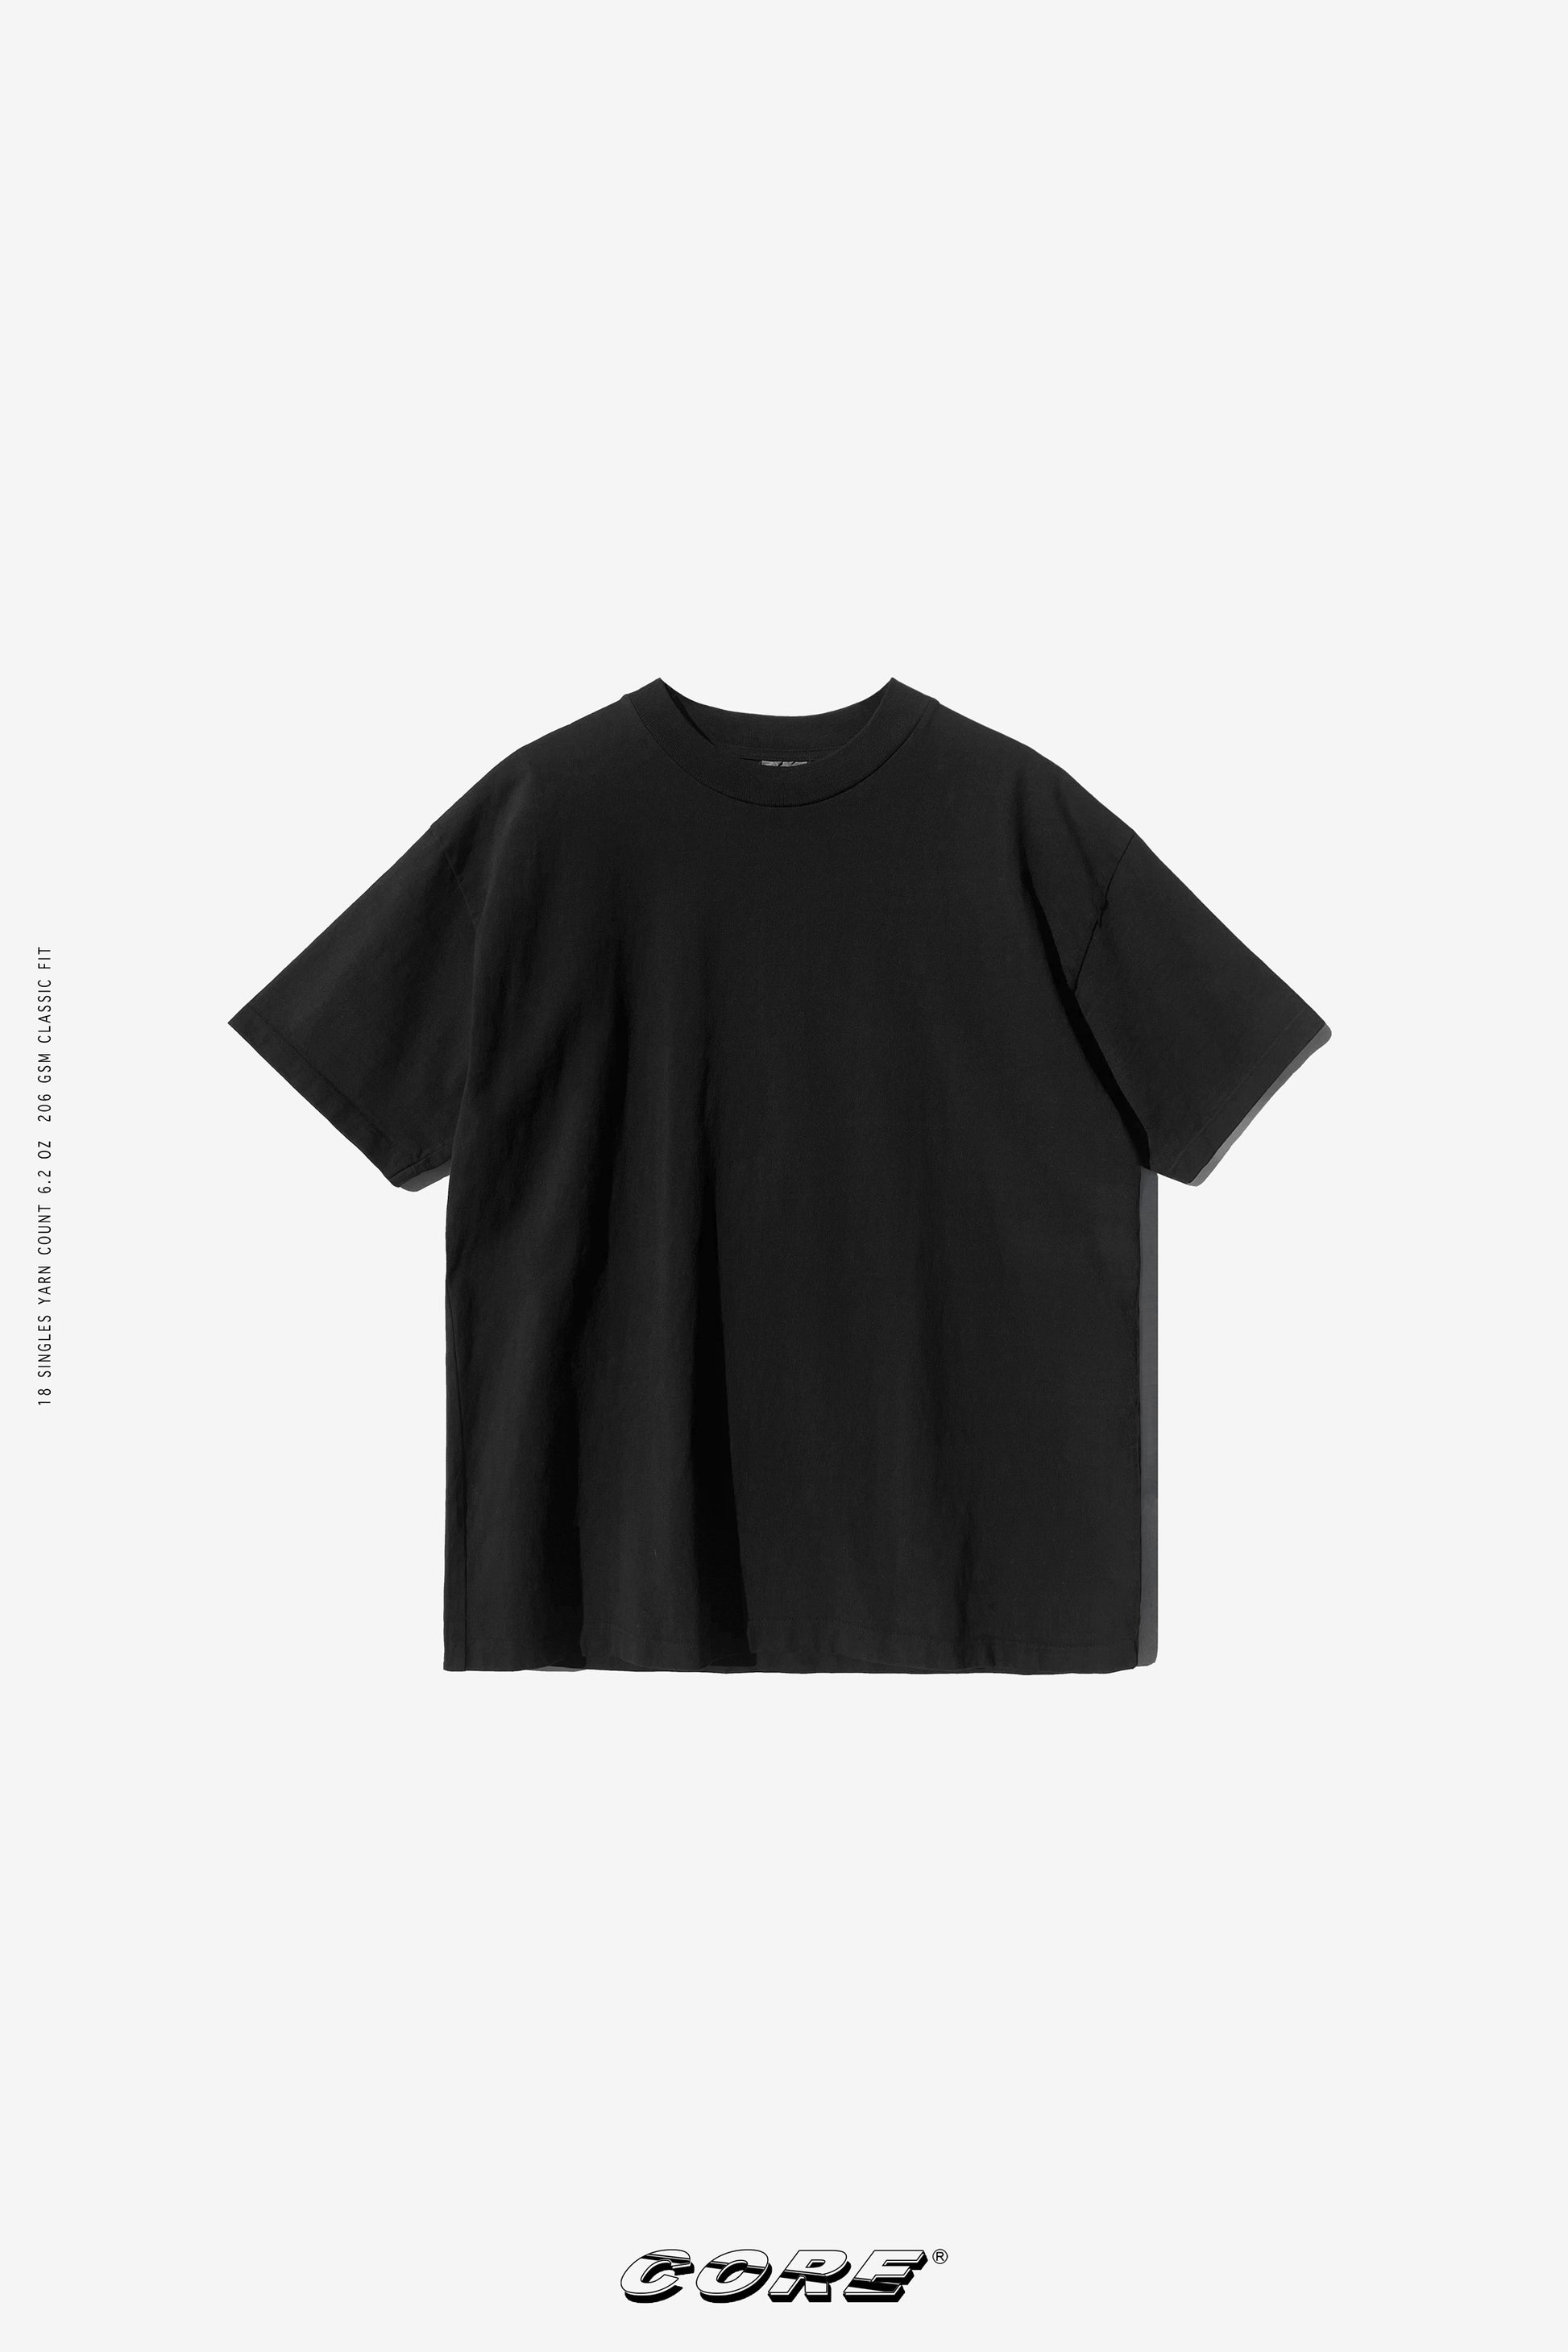 Sixelar Vintage Charcoal T-Shirt Best streetwear Blanks made in LA.